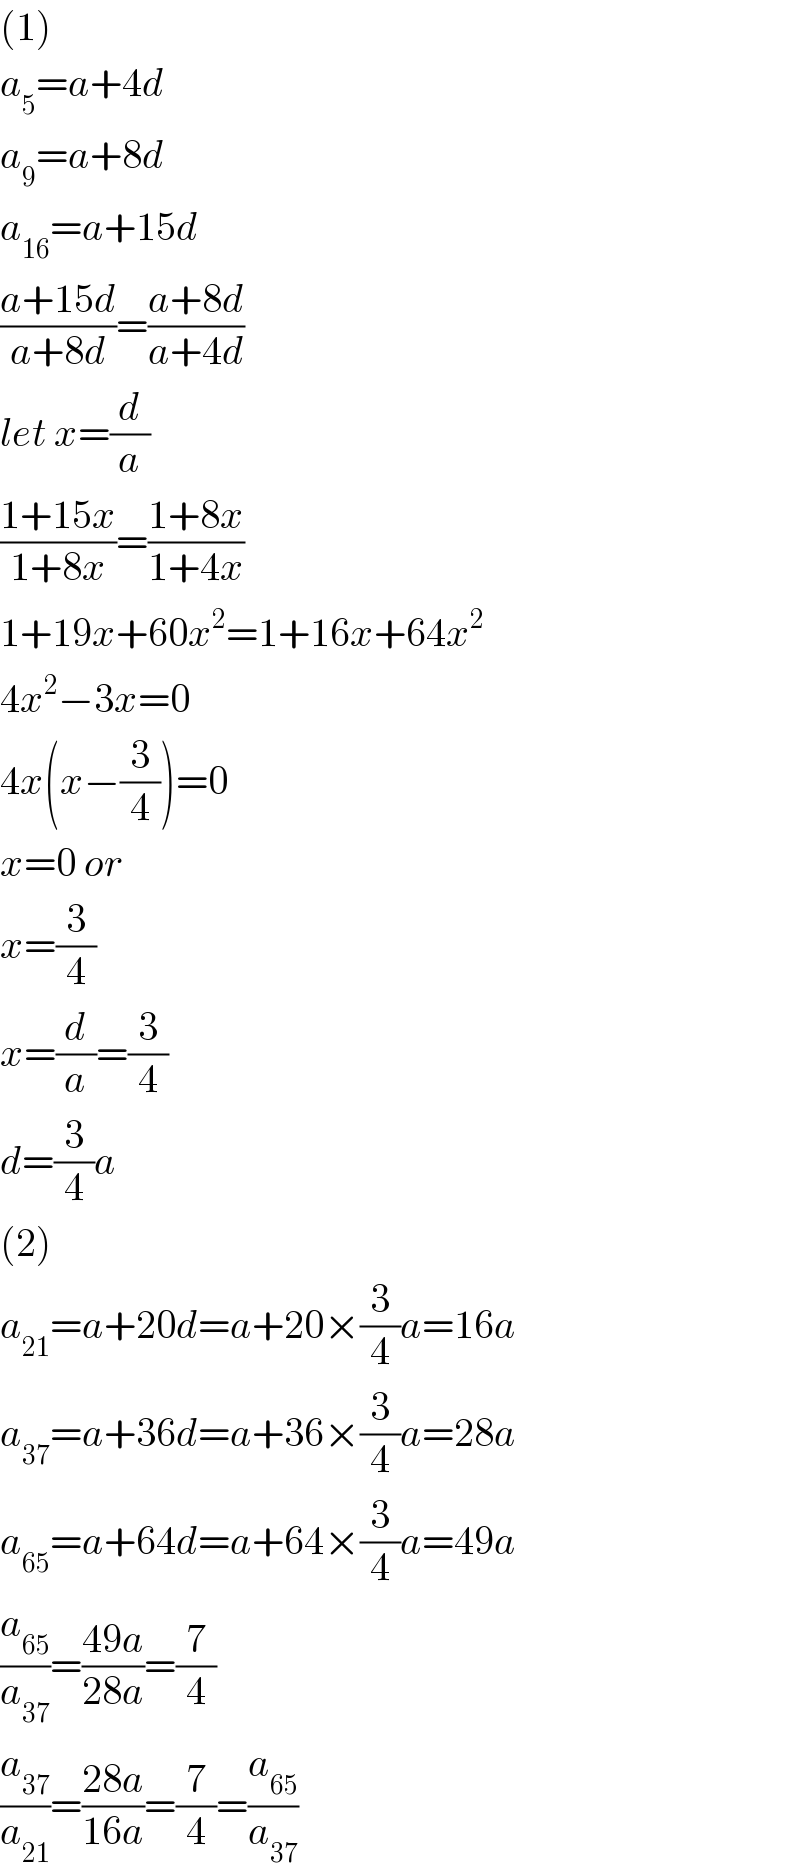 (1)  a_5 =a+4d  a_9 =a+8d  a_(16) =a+15d  ((a+15d)/(a+8d))=((a+8d)/(a+4d))  let x=(d/a)  ((1+15x)/(1+8x))=((1+8x)/(1+4x))  1+19x+60x^2 =1+16x+64x^2   4x^2 −3x=0  4x(x−(3/4))=0  x=0 or  x=(3/4)  x=(d/a)=(3/4)  d=(3/4)a  (2)  a_(21) =a+20d=a+20×(3/4)a=16a  a_(37) =a+36d=a+36×(3/4)a=28a  a_(65) =a+64d=a+64×(3/4)a=49a  (a_(65) /a_(37) )=((49a)/(28a))=(7/4)  (a_(37) /a_(21) )=((28a)/(16a))=(7/4)=(a_(65) /a_(37) )  